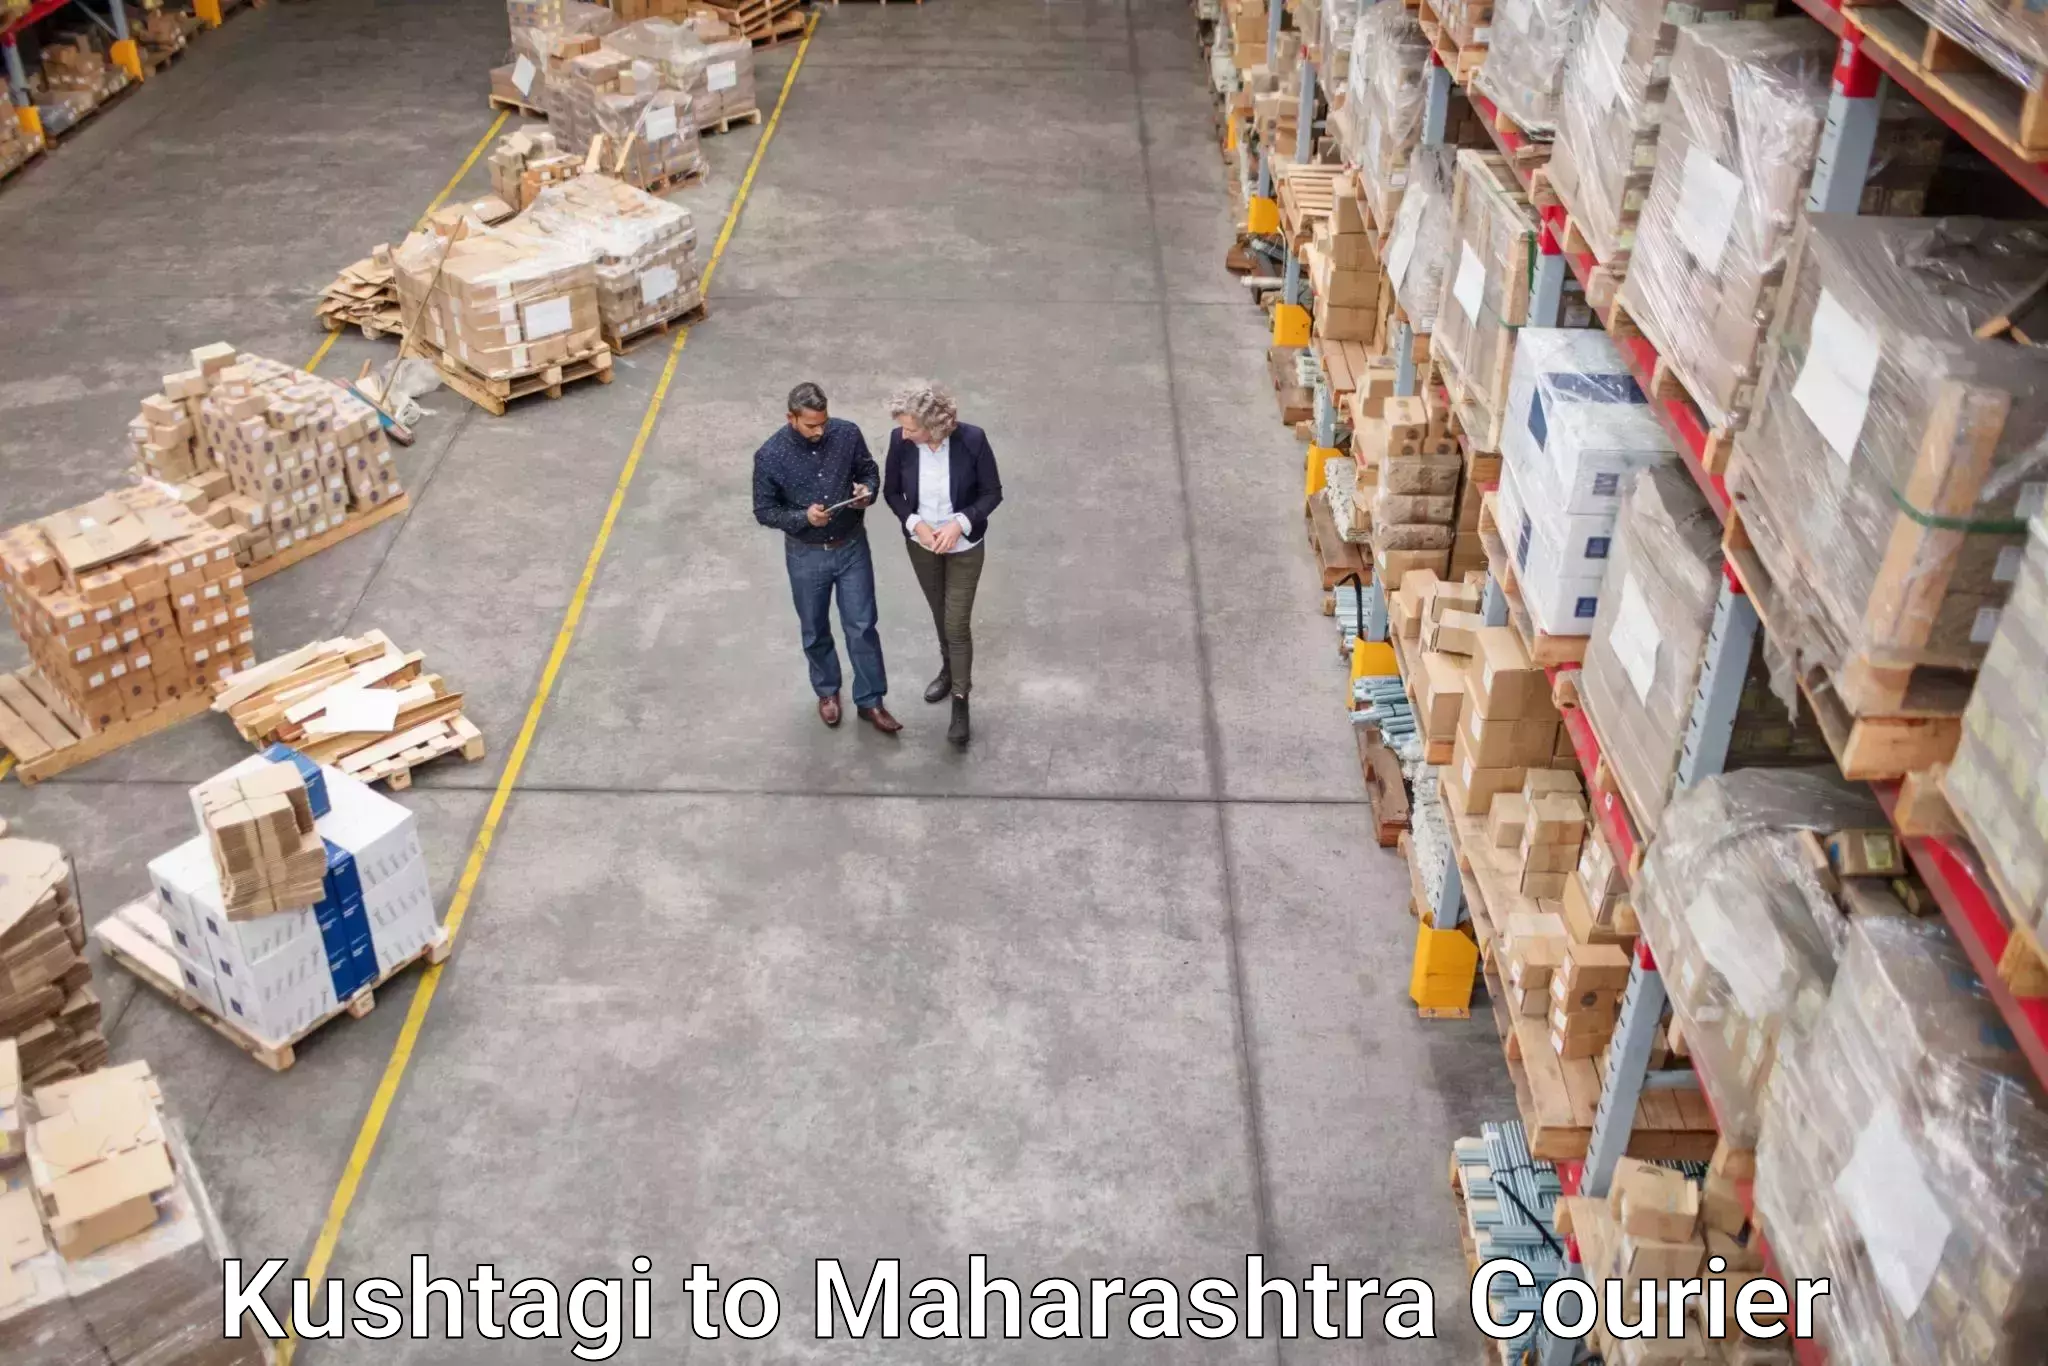 Advanced delivery network Kushtagi to Maharashtra